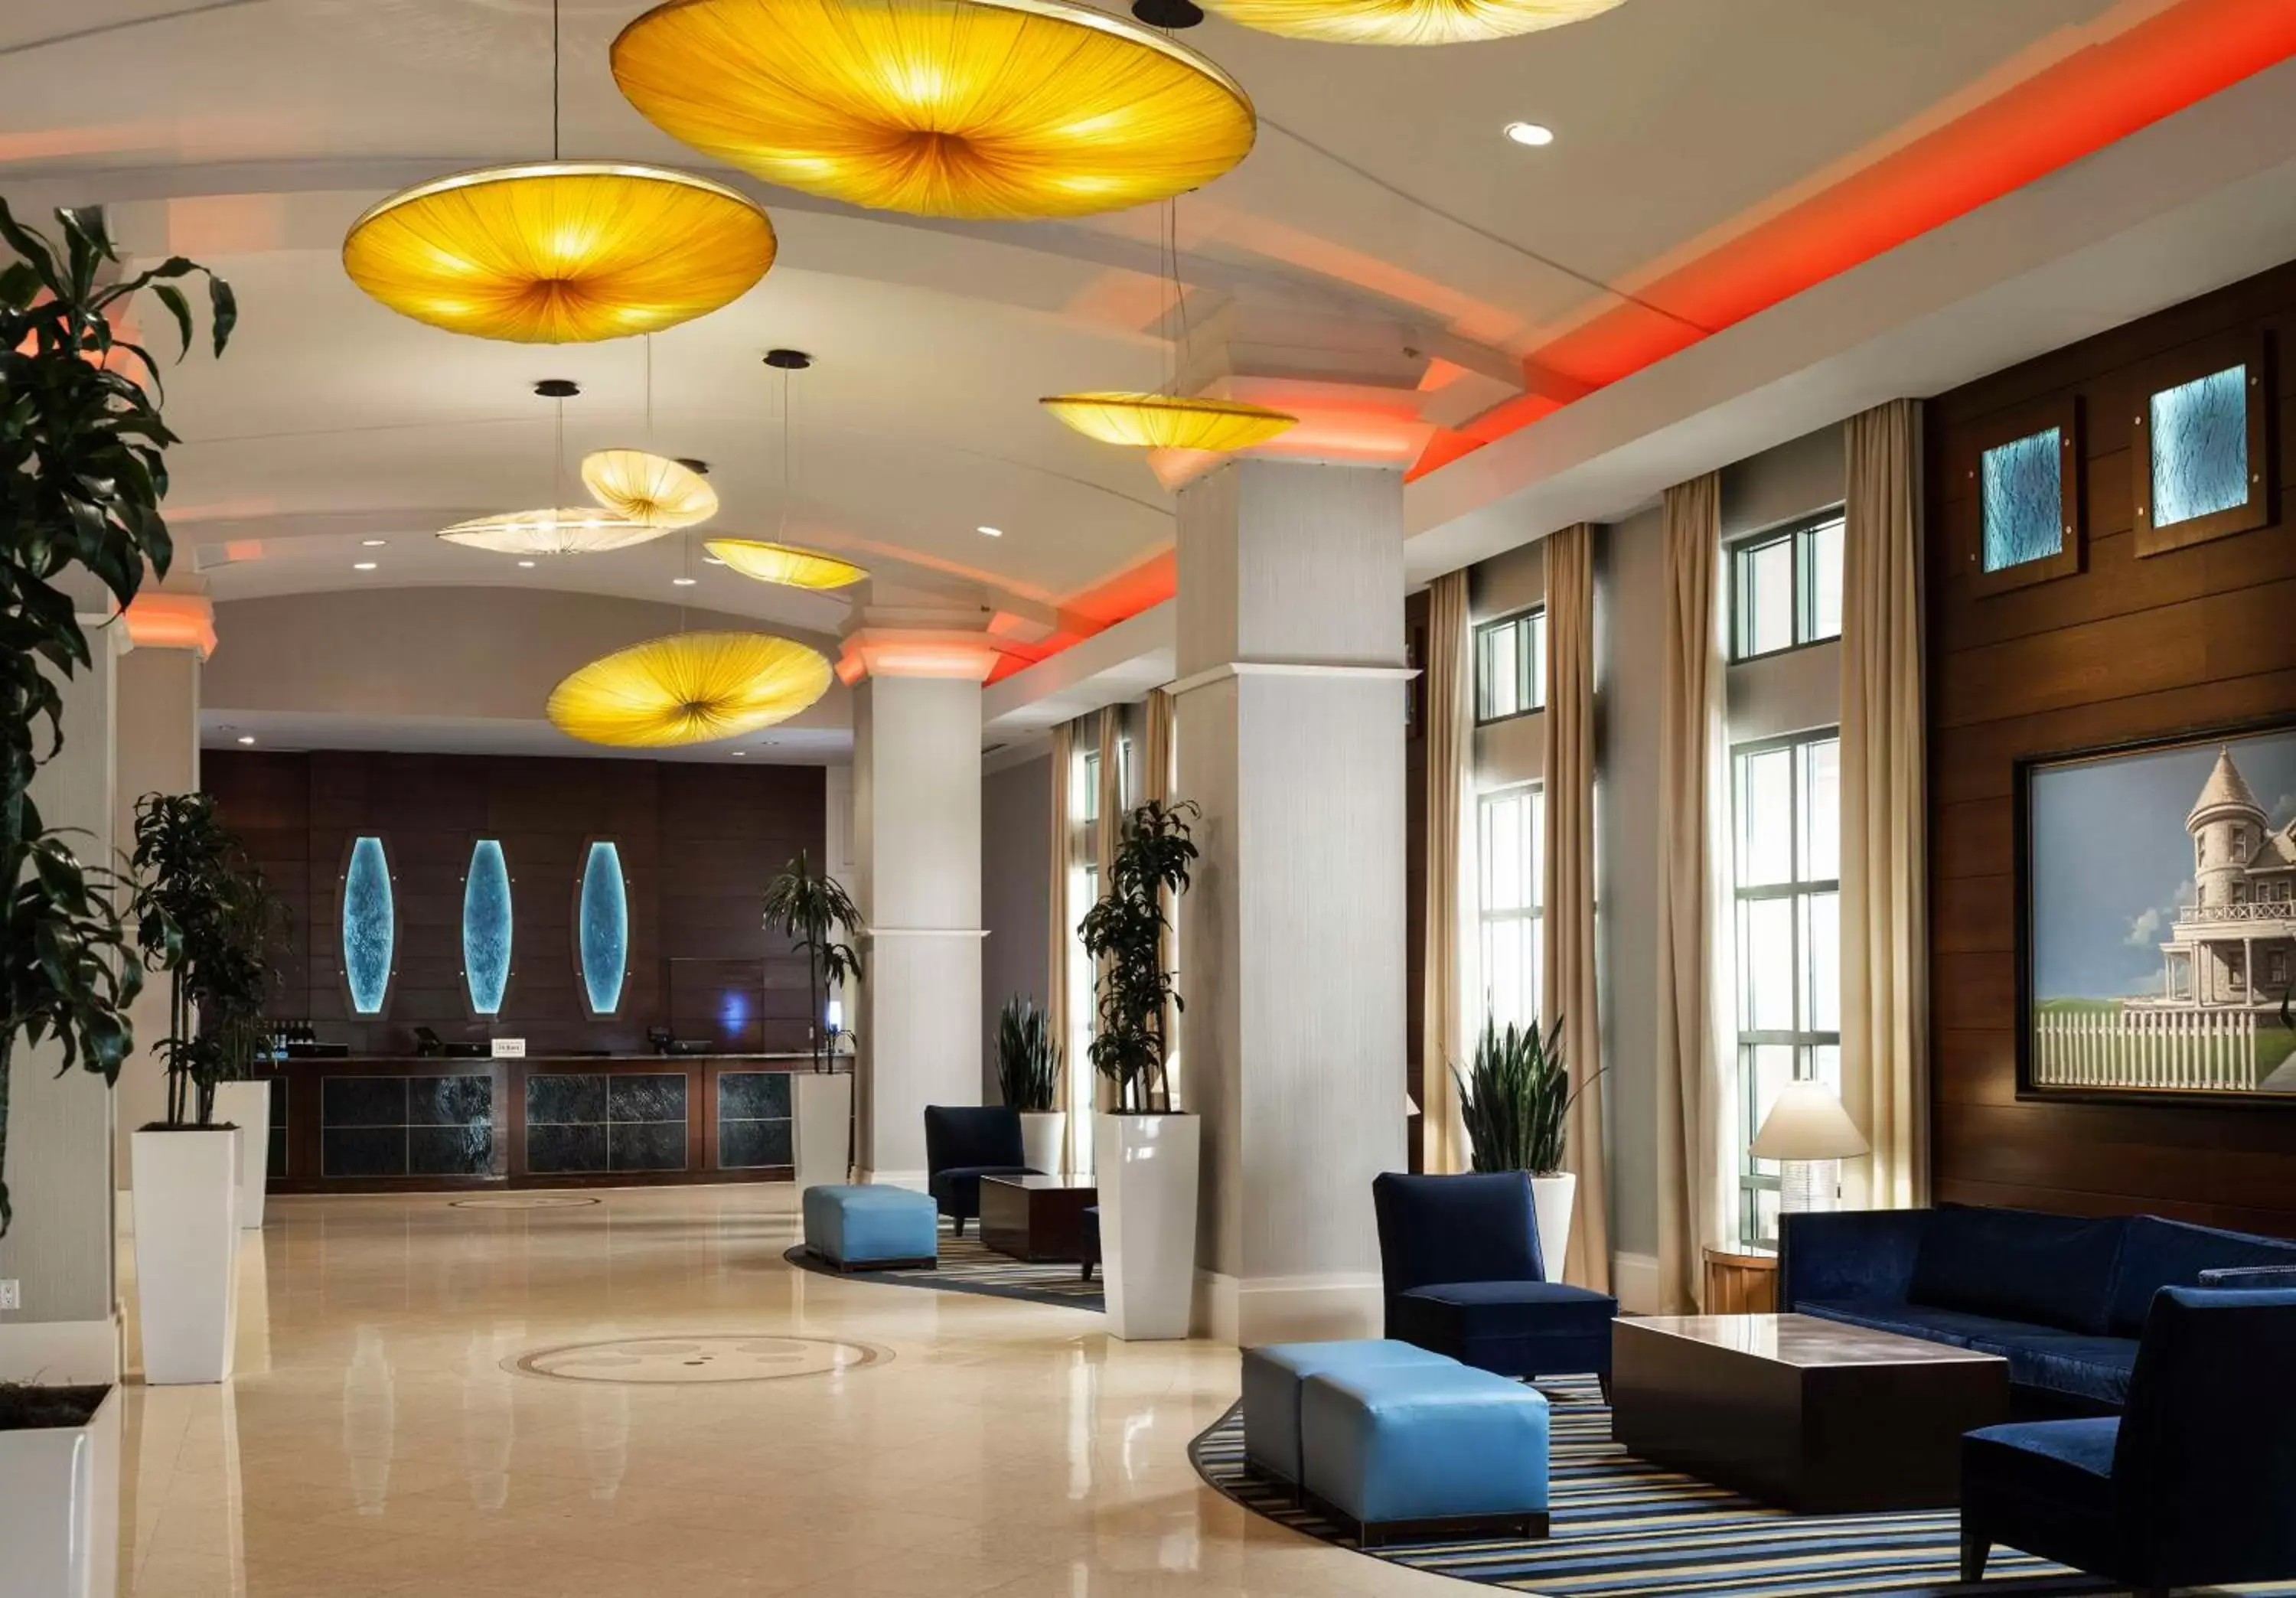 Lobby or reception, Lobby/Reception in Hilton Virginia Beach Oceanfront